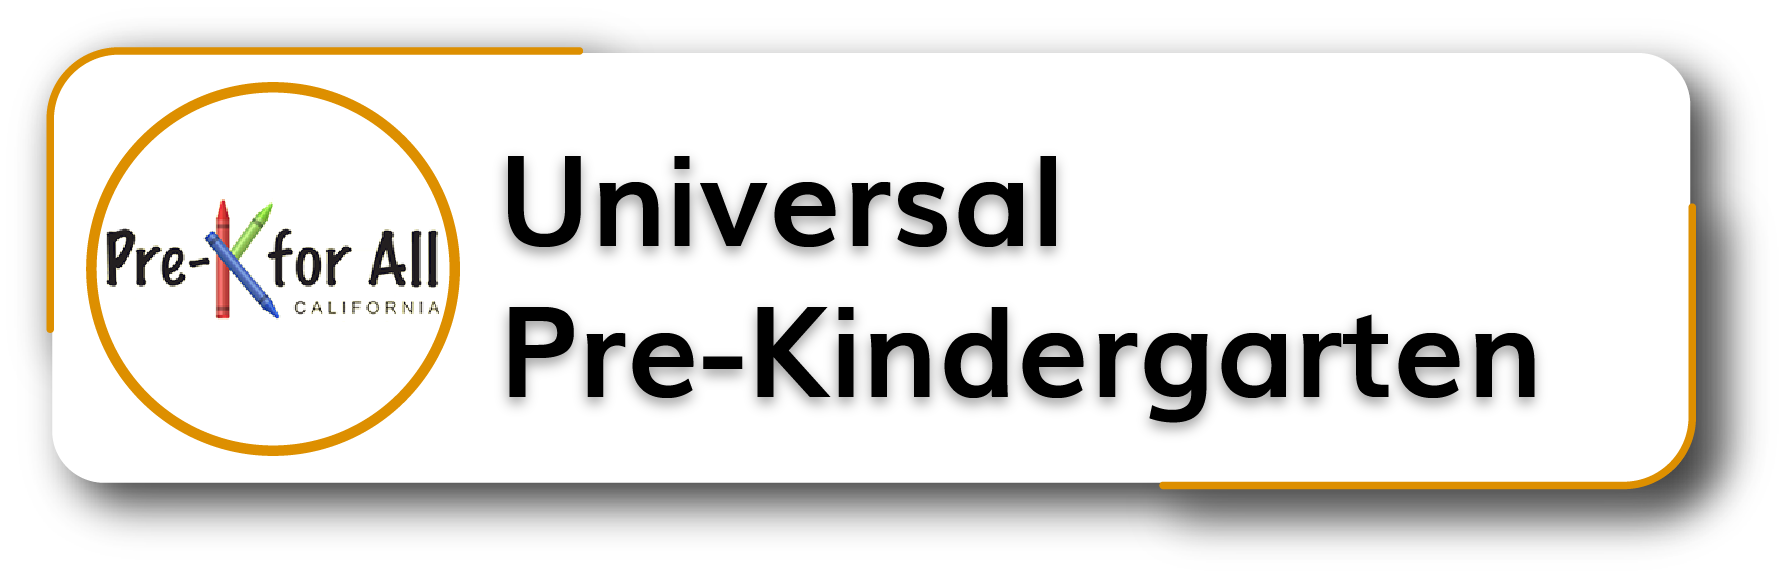 Universal Pre-Kindergarten Button